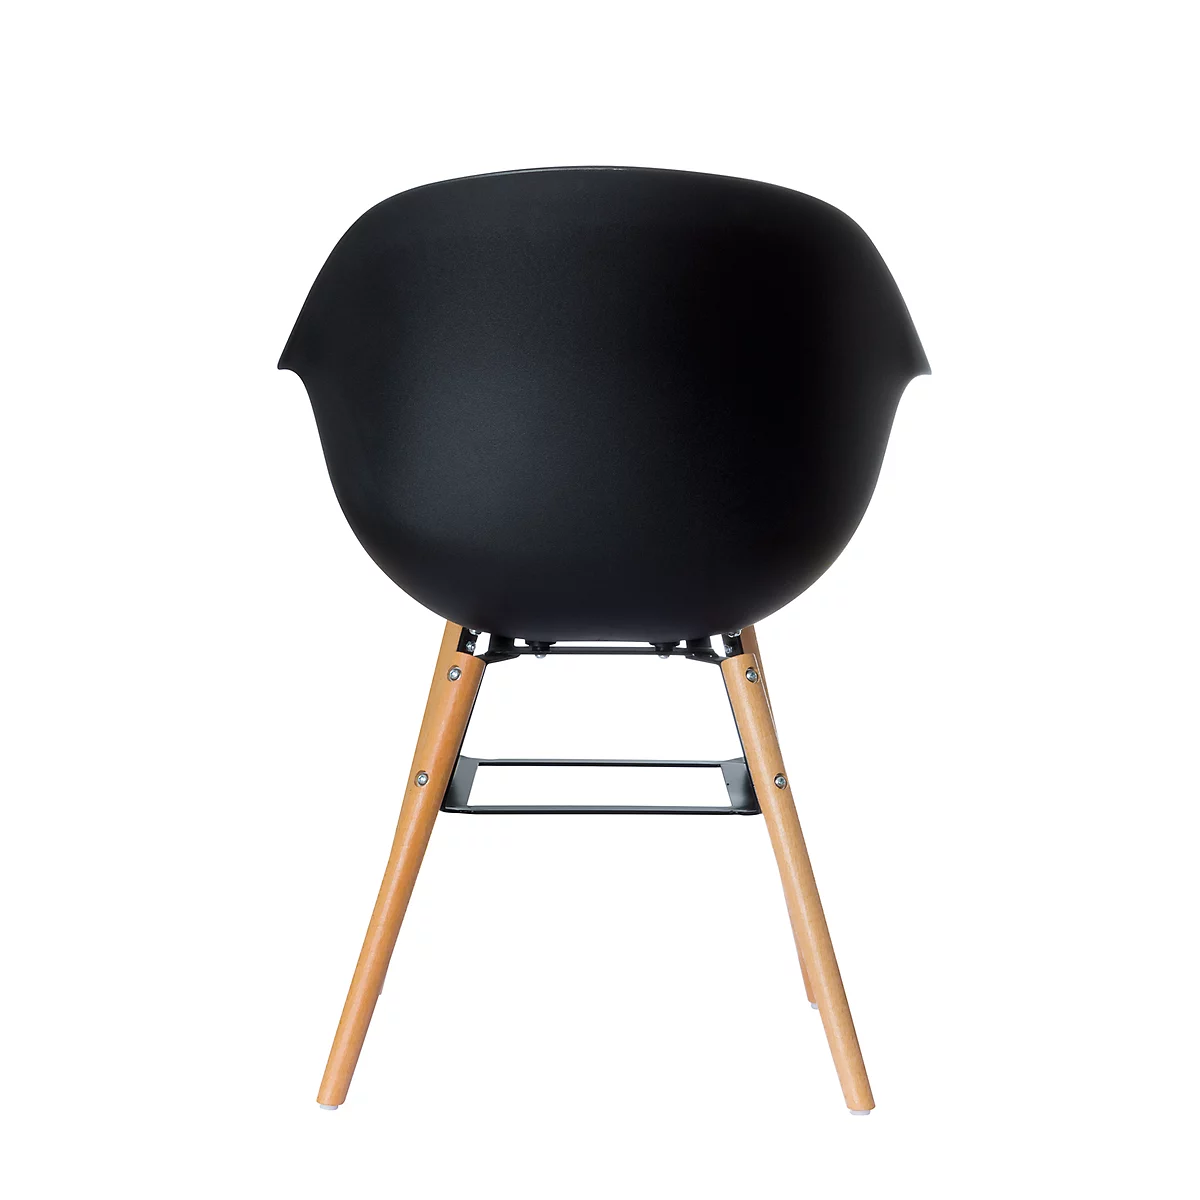 Schalenstuhl, Kunststoff, mit Holzbeinen, Sitzkissen, desinfektionsmittelbeständig, schwarz, 2er-Set